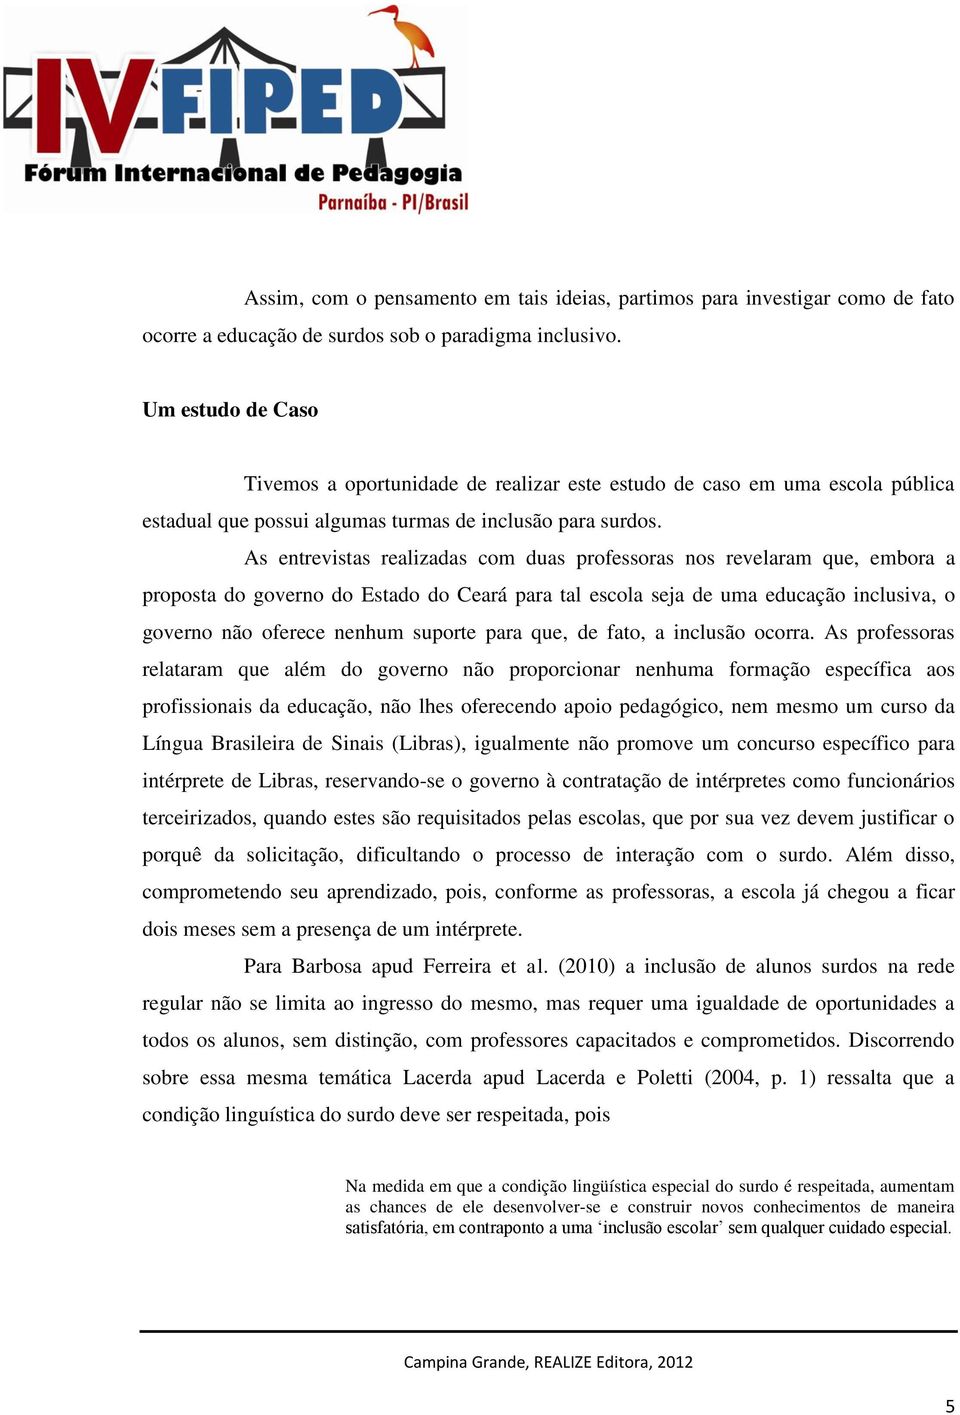 As entrevistas realizadas com duas professoras nos revelaram que, embora a proposta do governo do Estado do Ceará para tal escola seja de uma educação inclusiva, o governo não oferece nenhum suporte